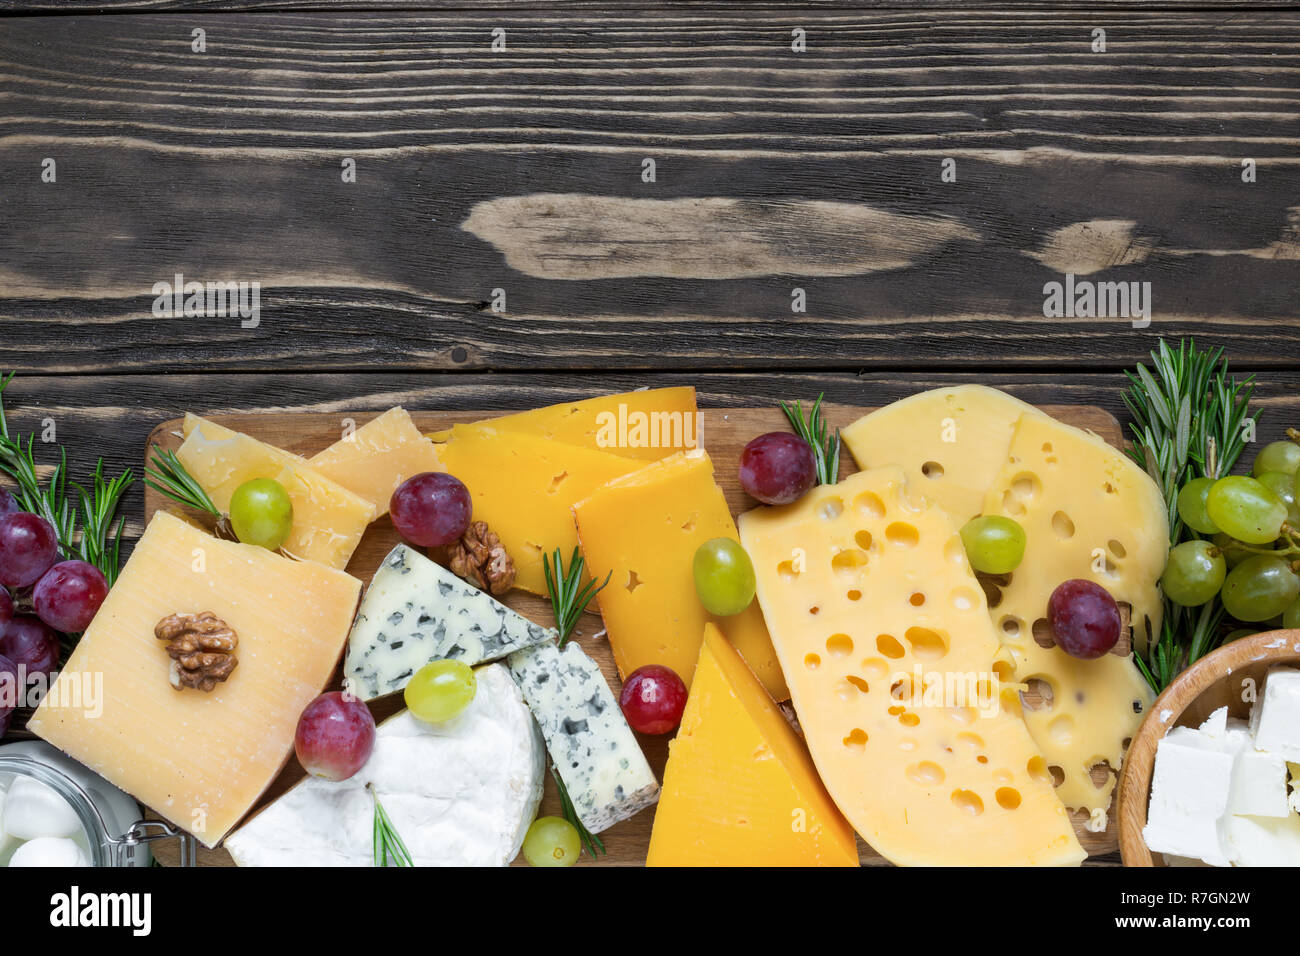 Vari tipi di formaggi sul tagliere di legno su tavola in legno rustico con uve e rosmarino, vista dall'alto Foto Stock